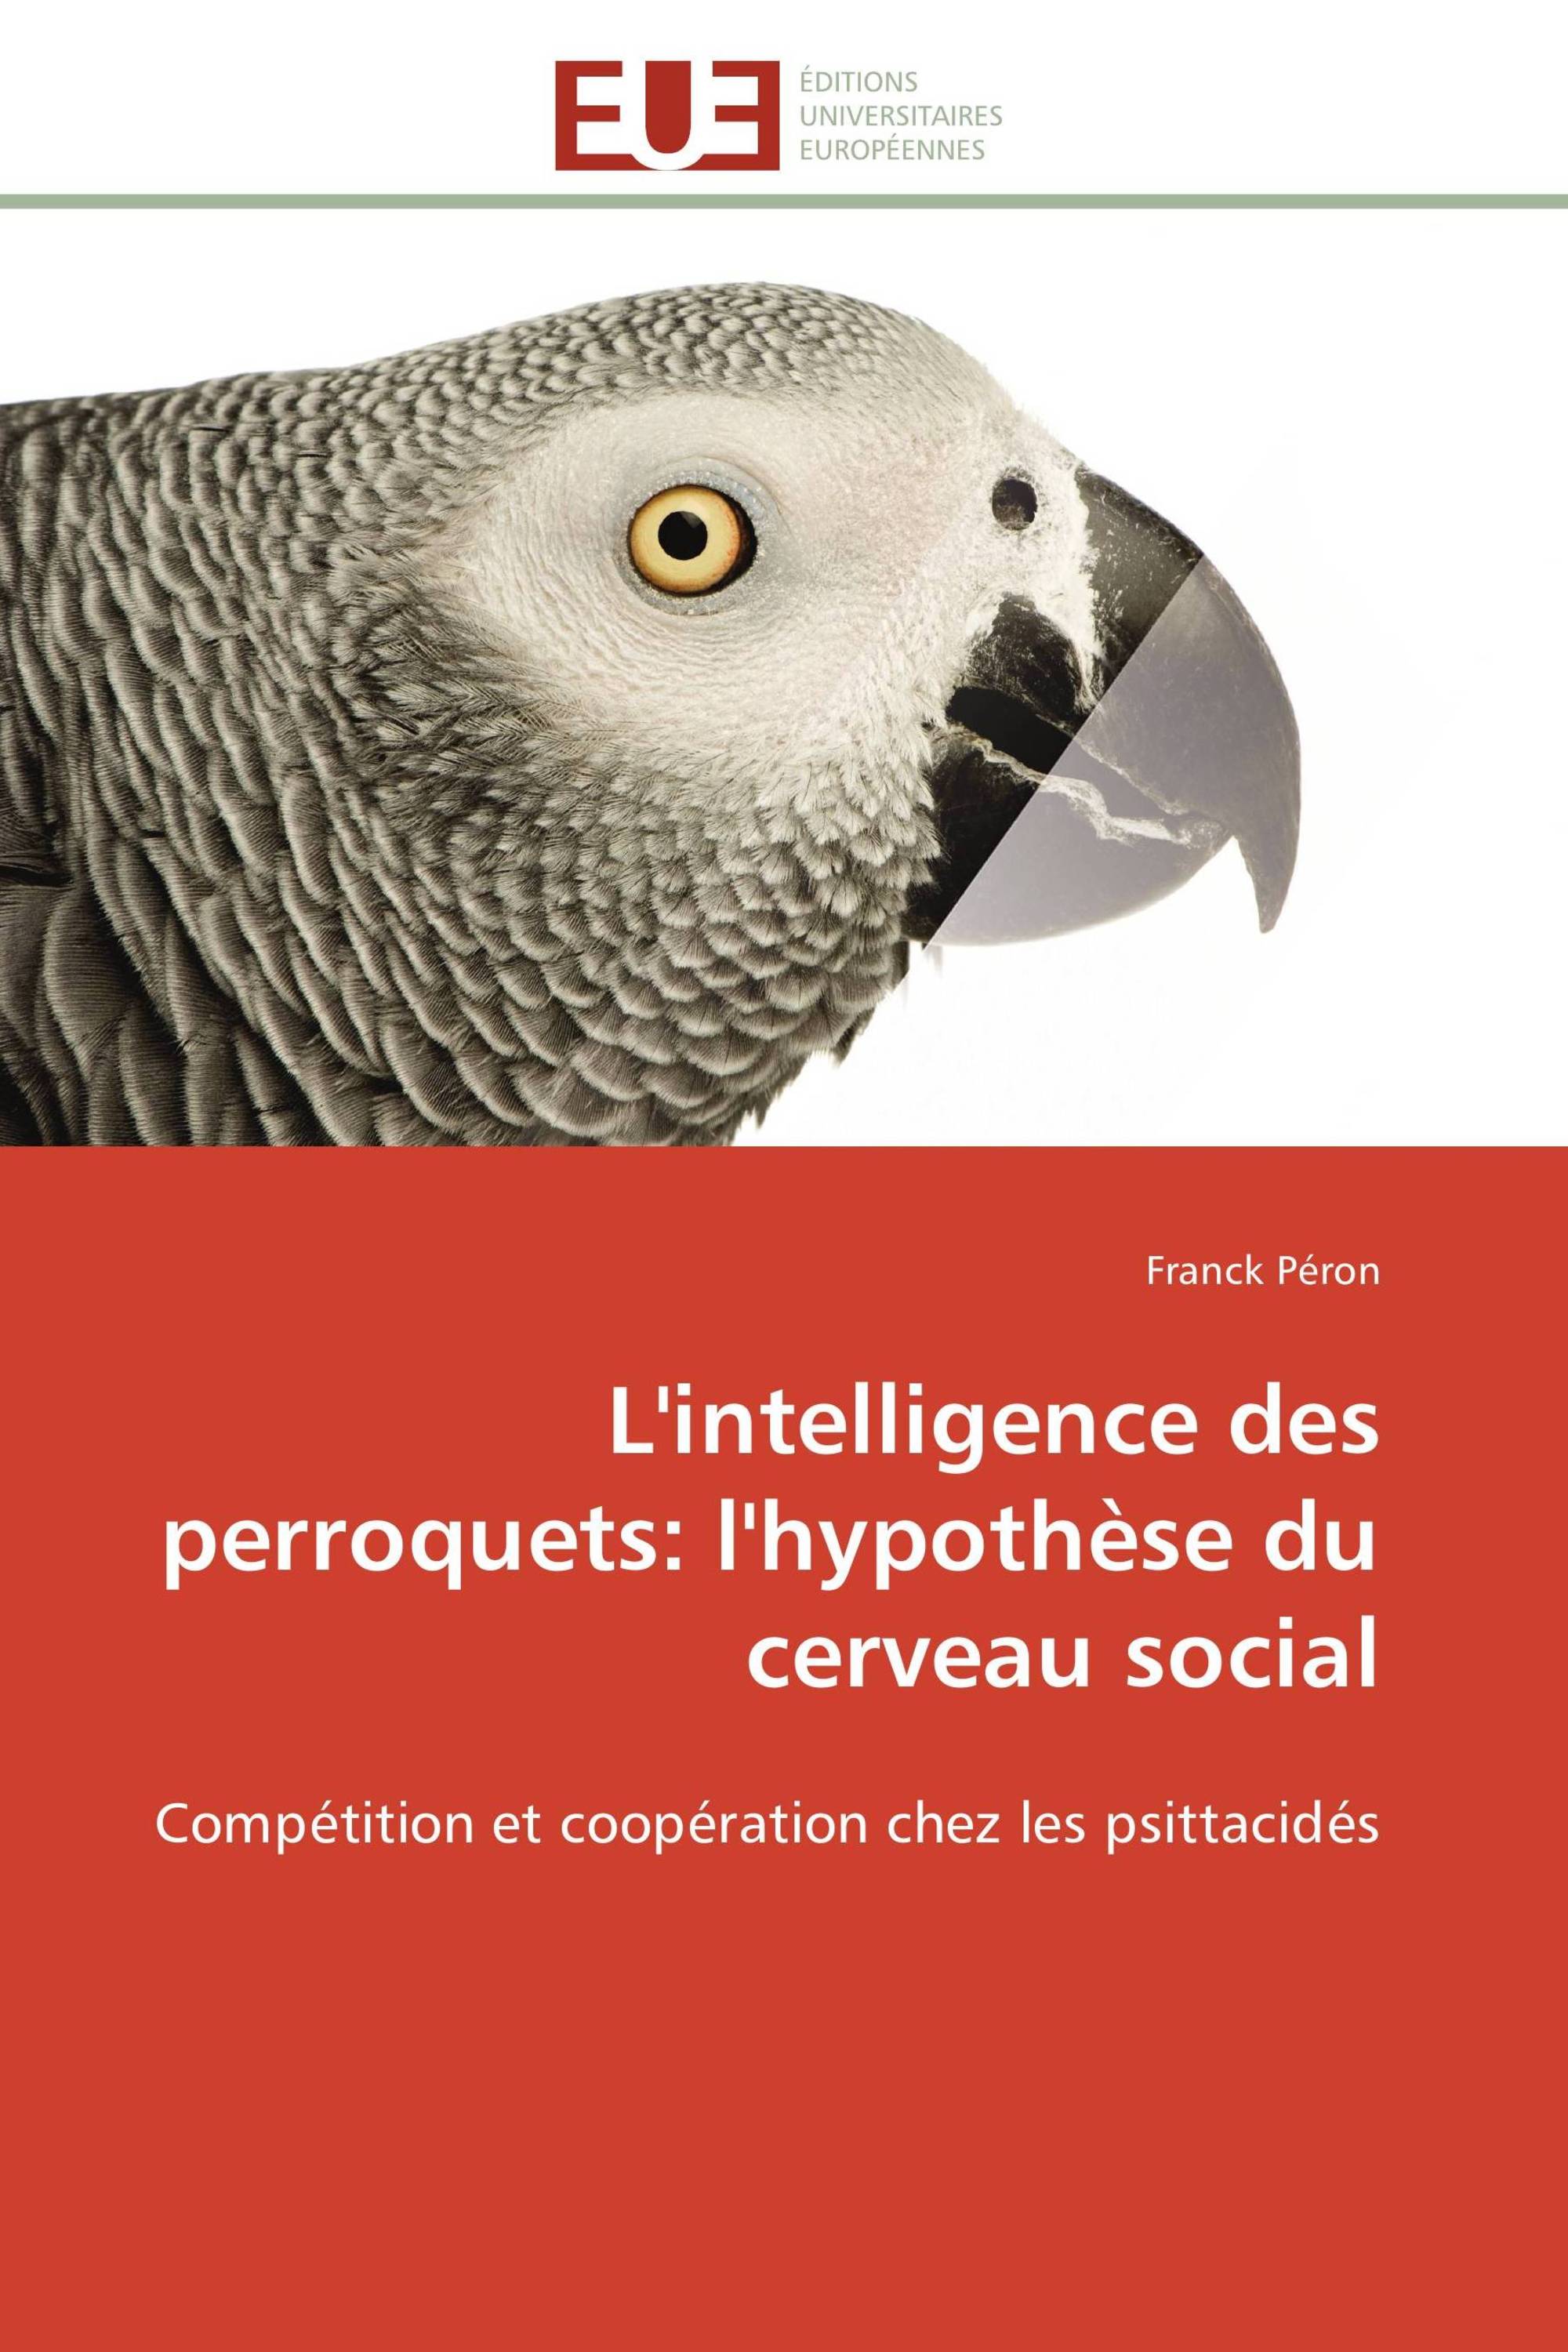 L'intelligence des perroquets: l'hypothèse du cerveau social